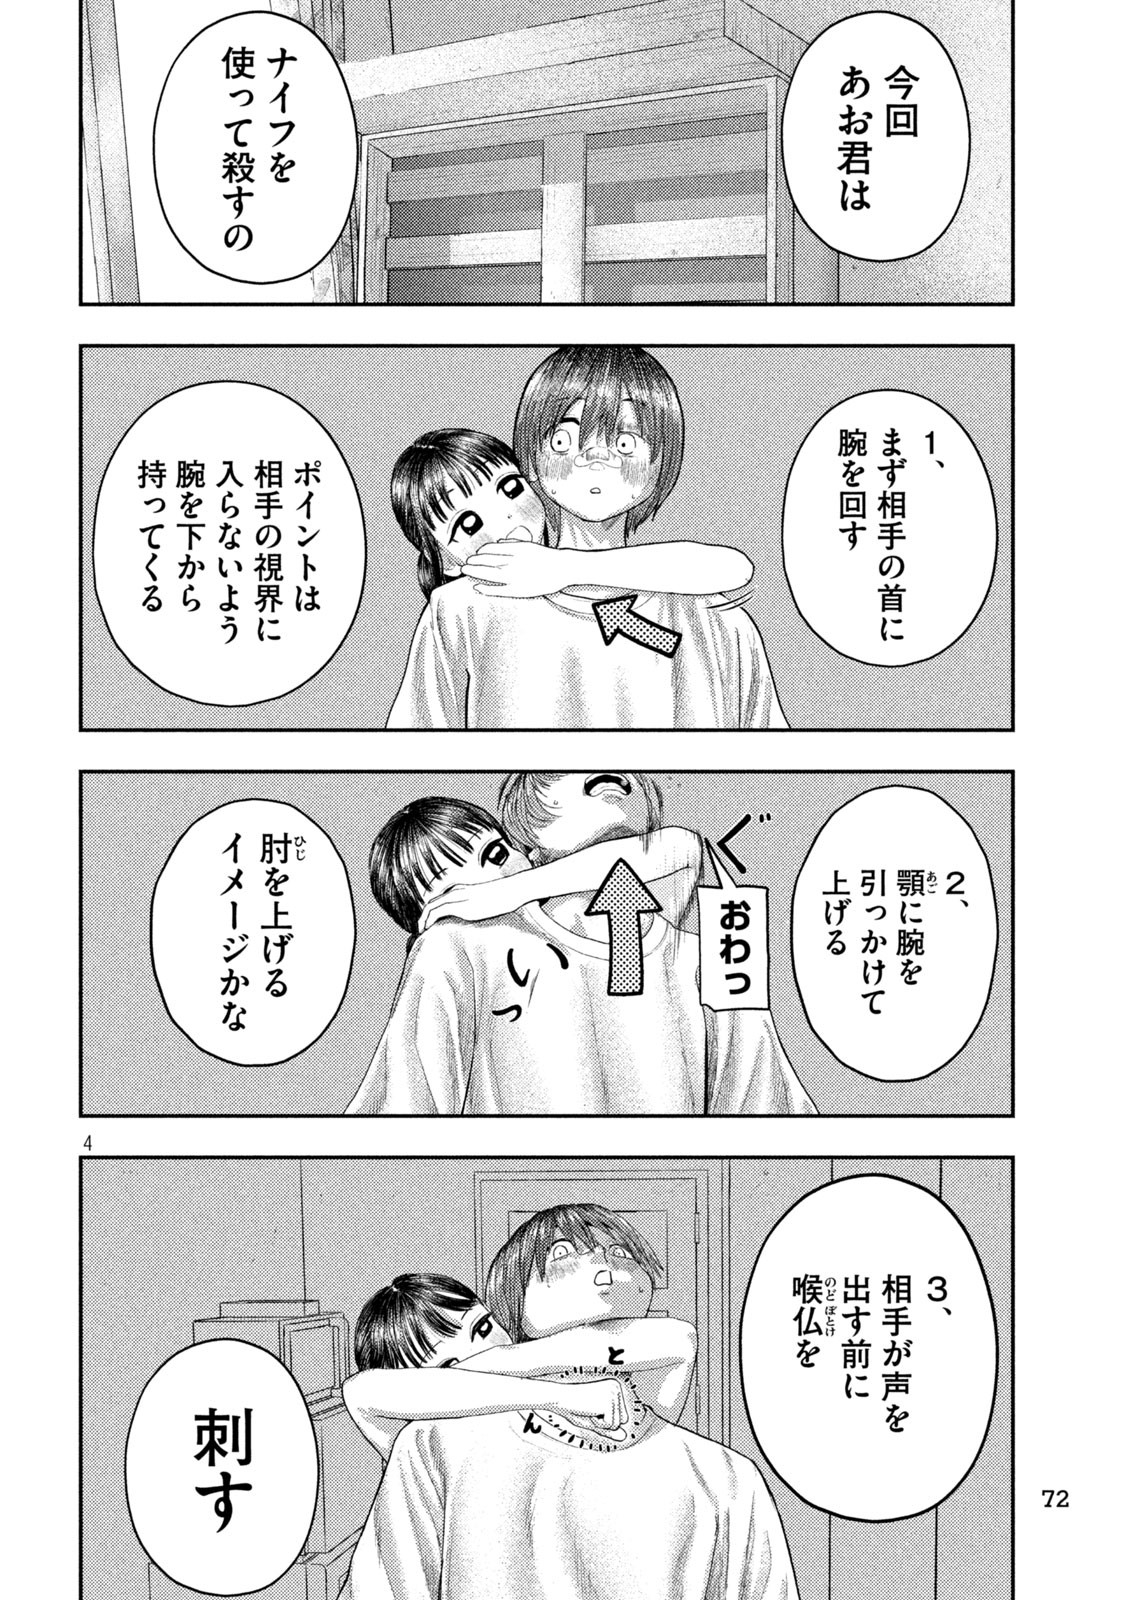 Nezumi no Koi - Chapter 4 - Page 4